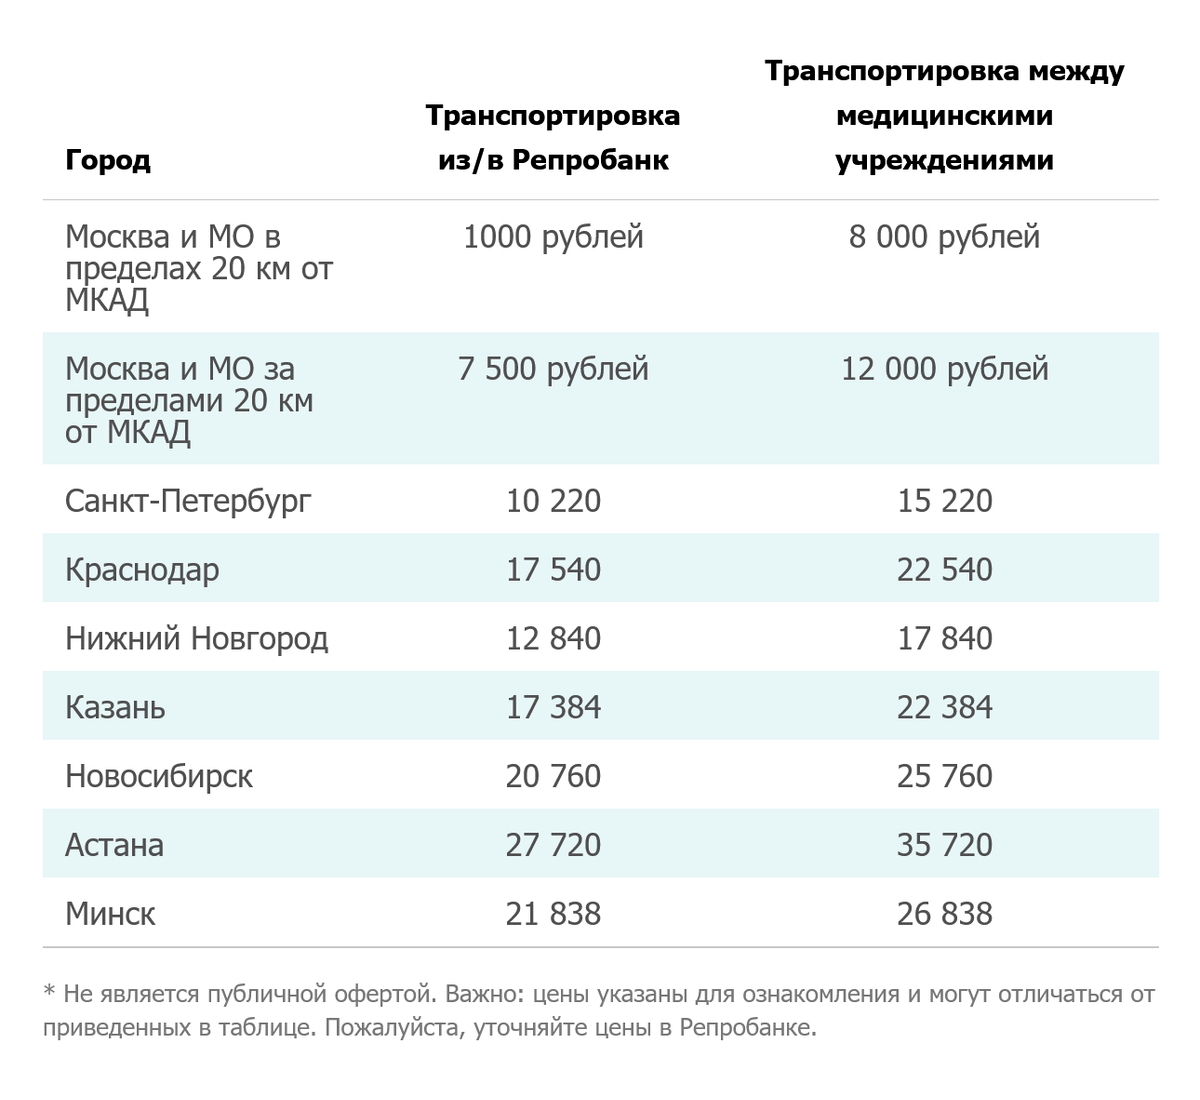 Это прайс на перевозку от криобанка, где хранились мои эмбрионы. В других городах цены гораздо выше. Источник: reprobank.ru